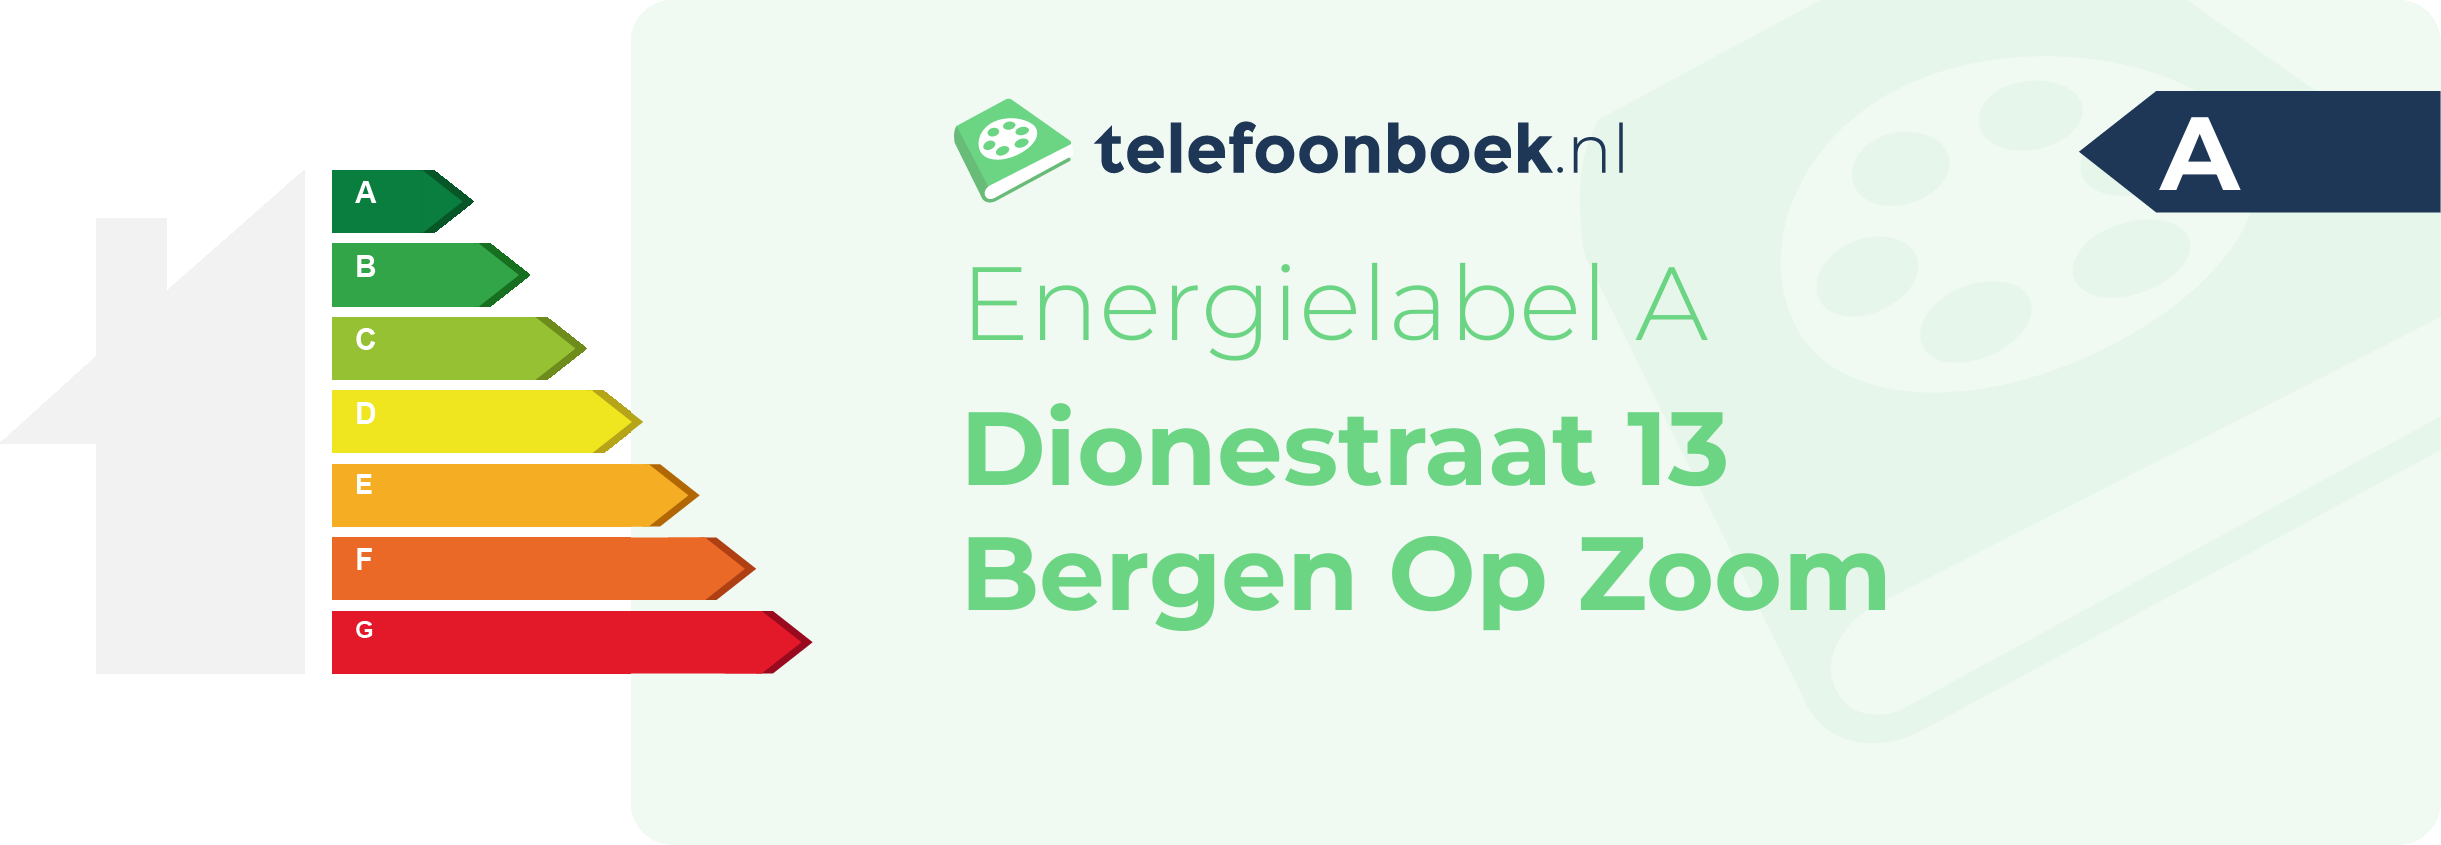 Energielabel Dionestraat 13 Bergen Op Zoom